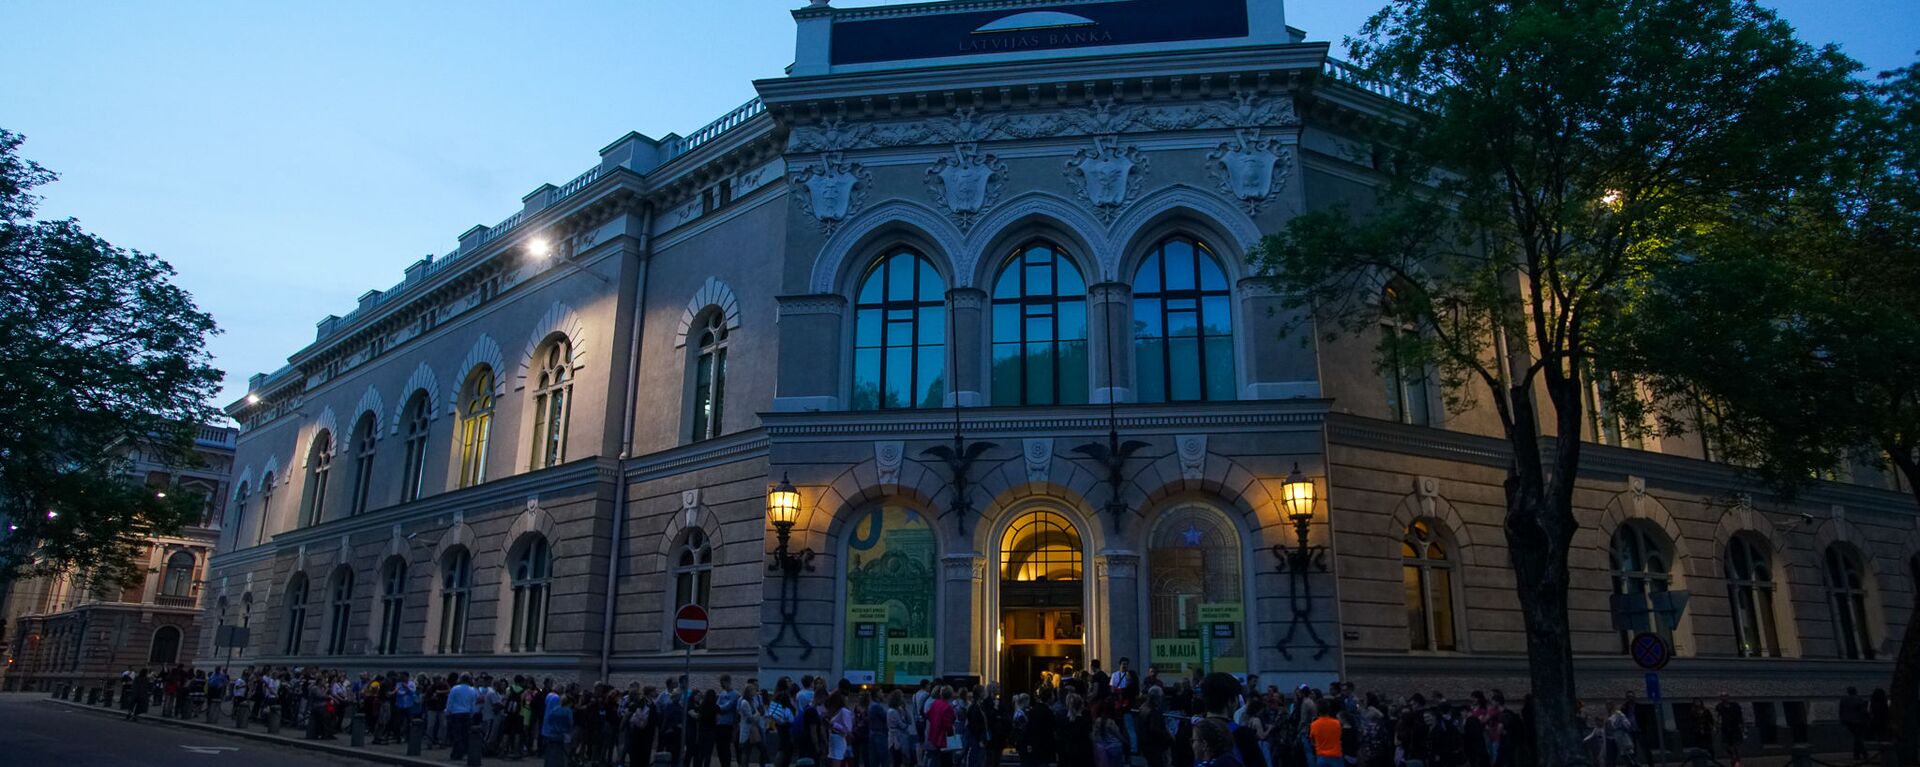 Посетители в очереди в Латвийский банк во время акции Ночь музеев в Риге - Sputnik Латвия, 1920, 10.01.2020